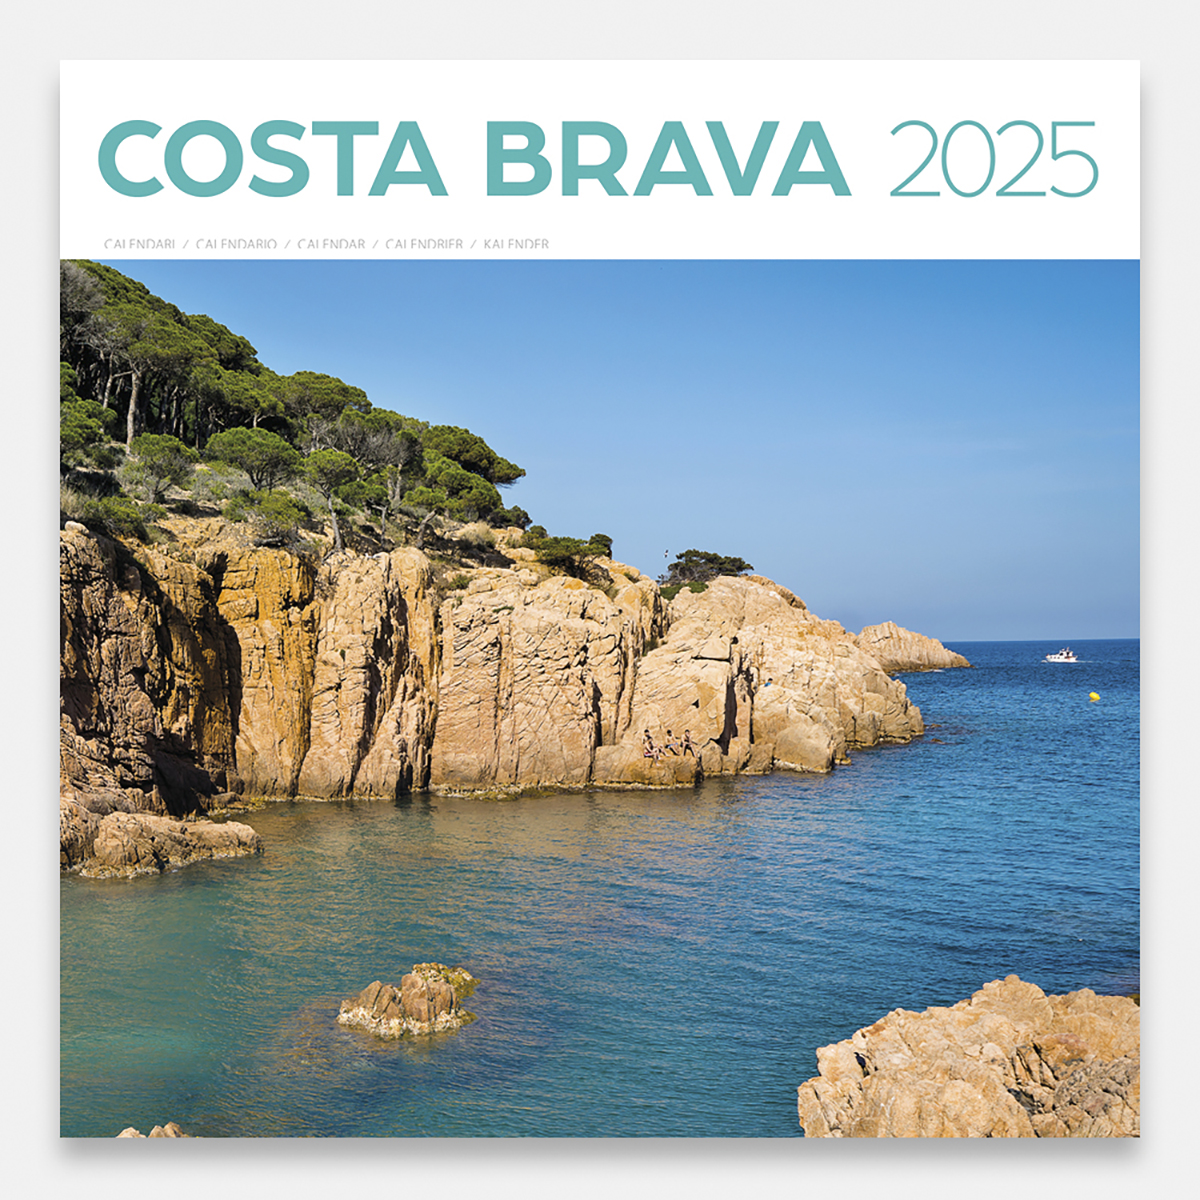 Calendrier 2025 Costa Brava / Girona 25cbg calendario pared 2025 costa brava